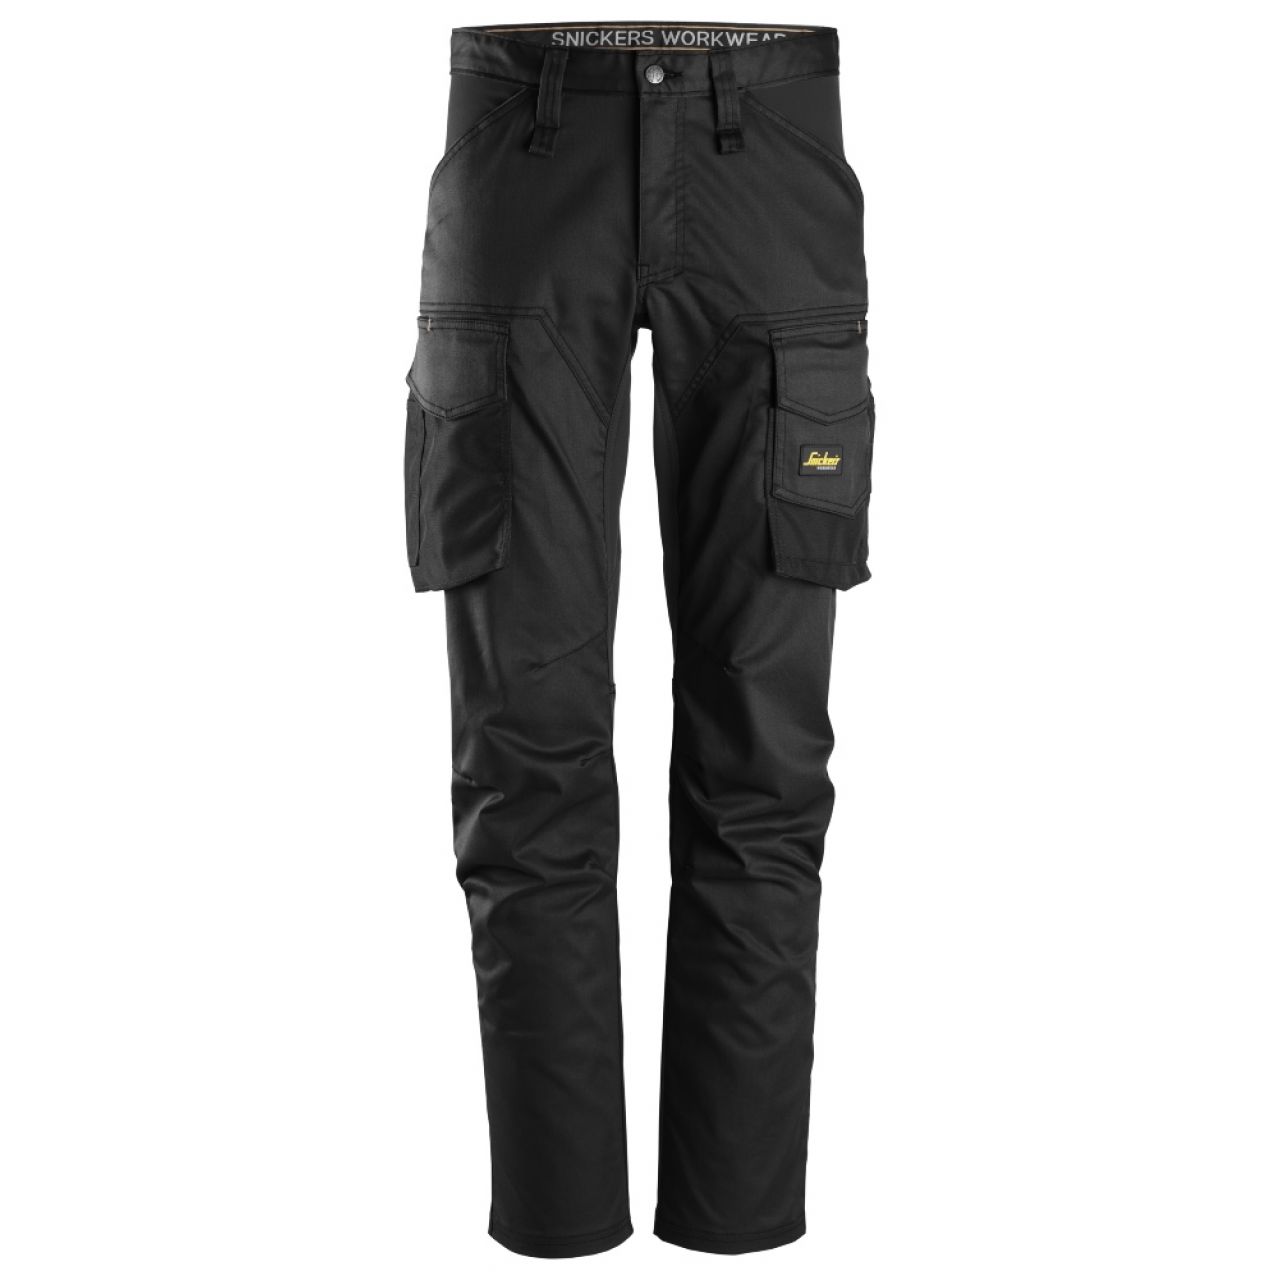 6803 Pantalones largos de trabajo elásticos sin bolsillos para las rodilleras AllroundWork negro talla 148